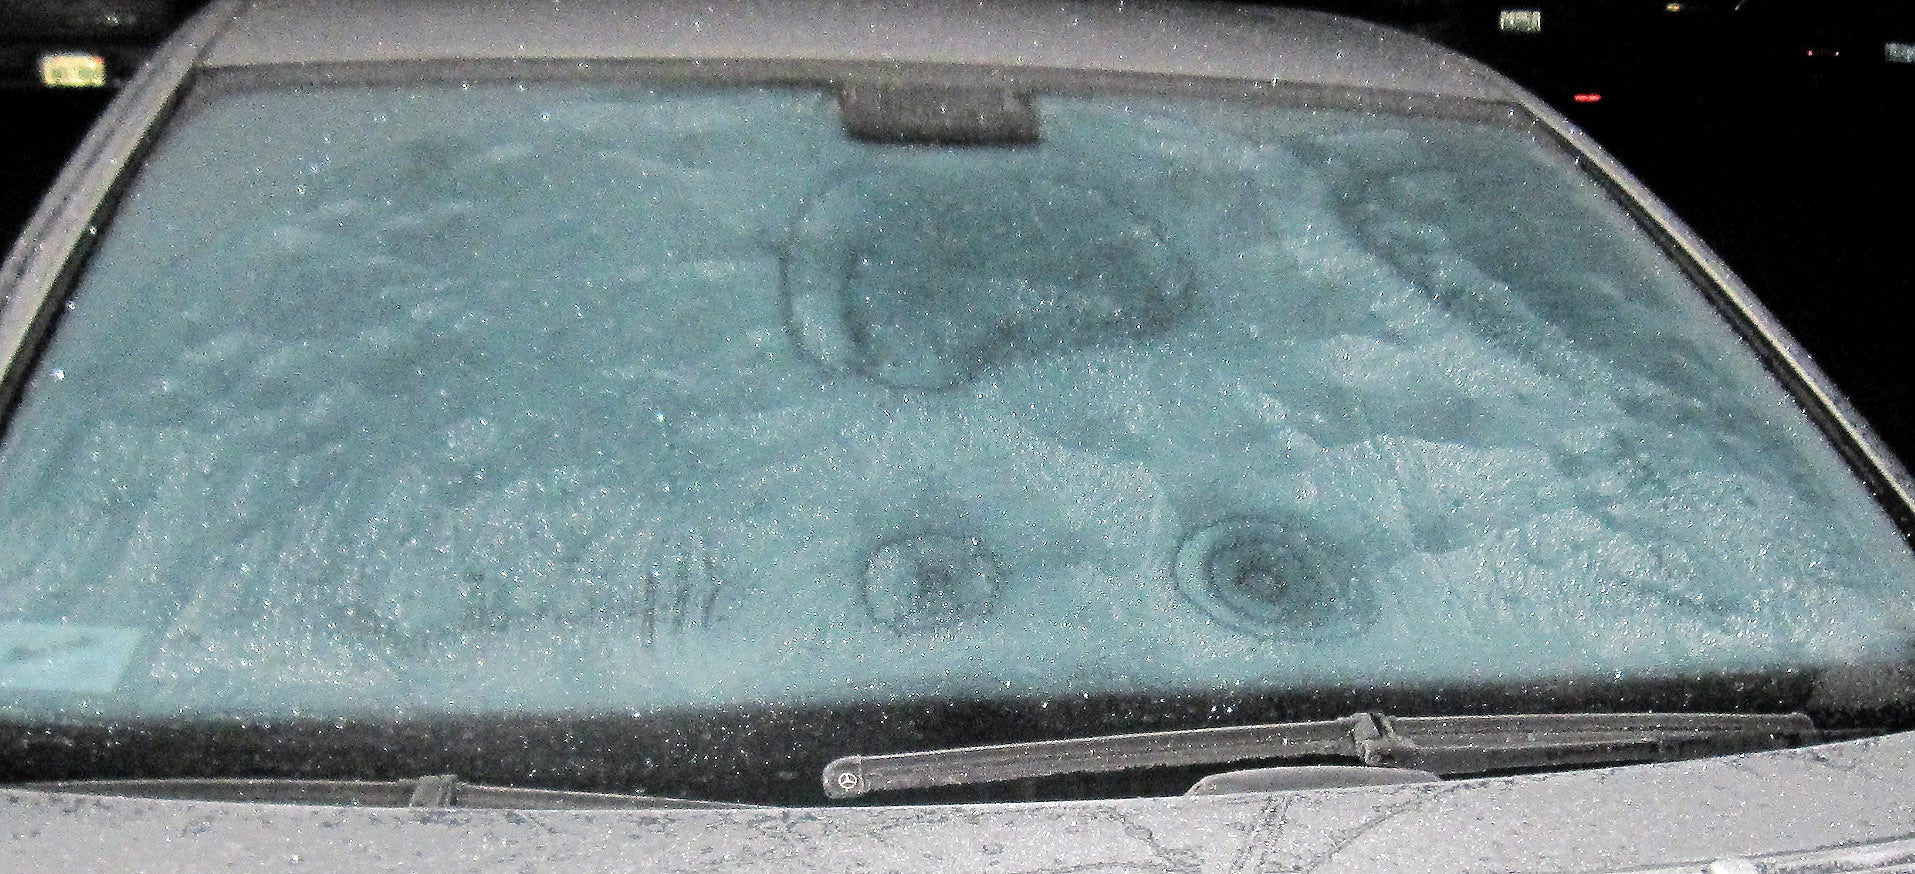 Δείτε το απίστευτο κόλπο για να φύγει ο πάγος από το παρμπρίζ του αυτοκινήτου (Βίντεο)